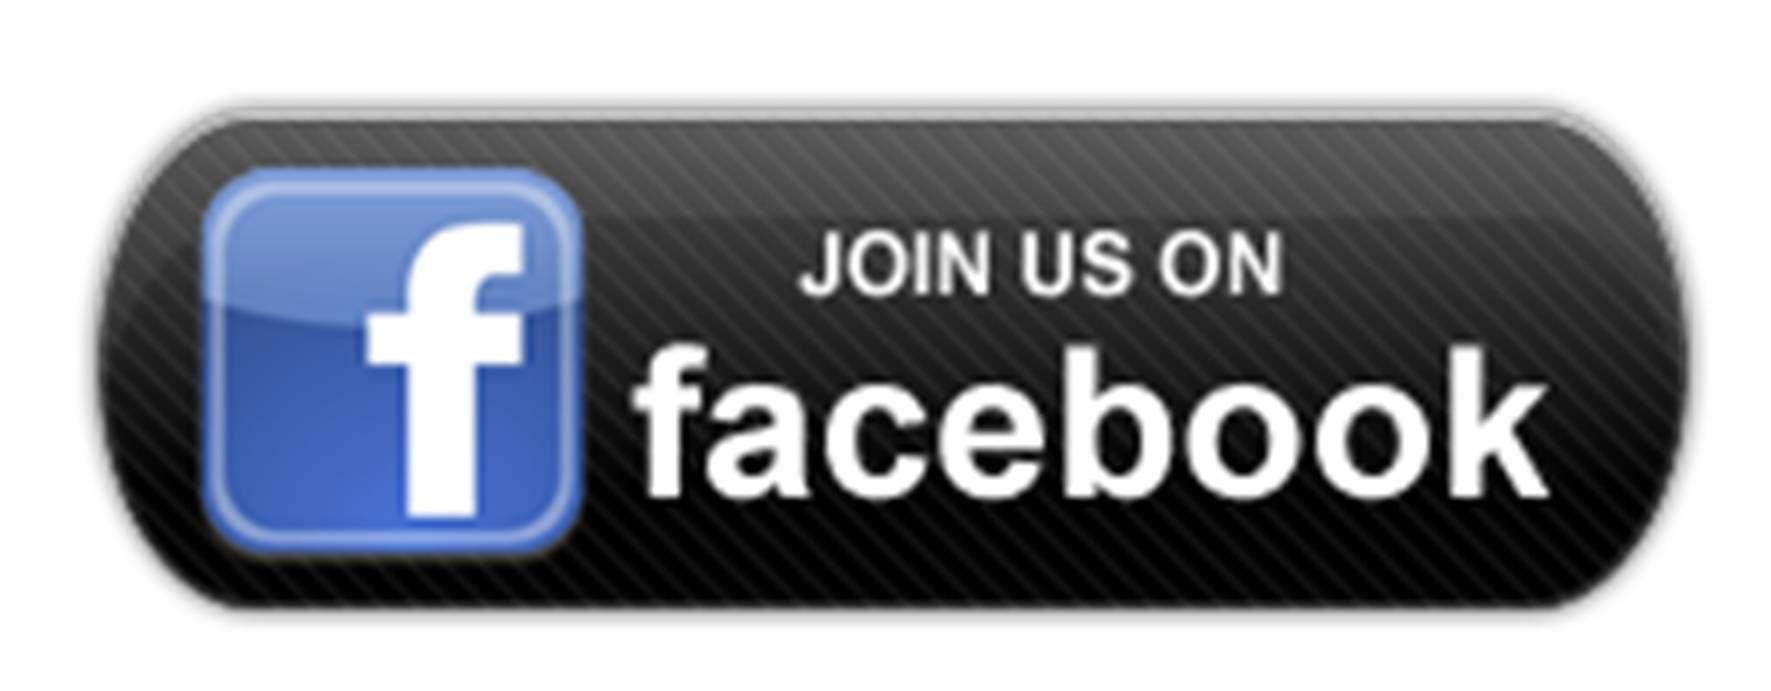 We Are On Facebook Logo - facebook-logo – Saint James Episcopal Church of Goshen NY